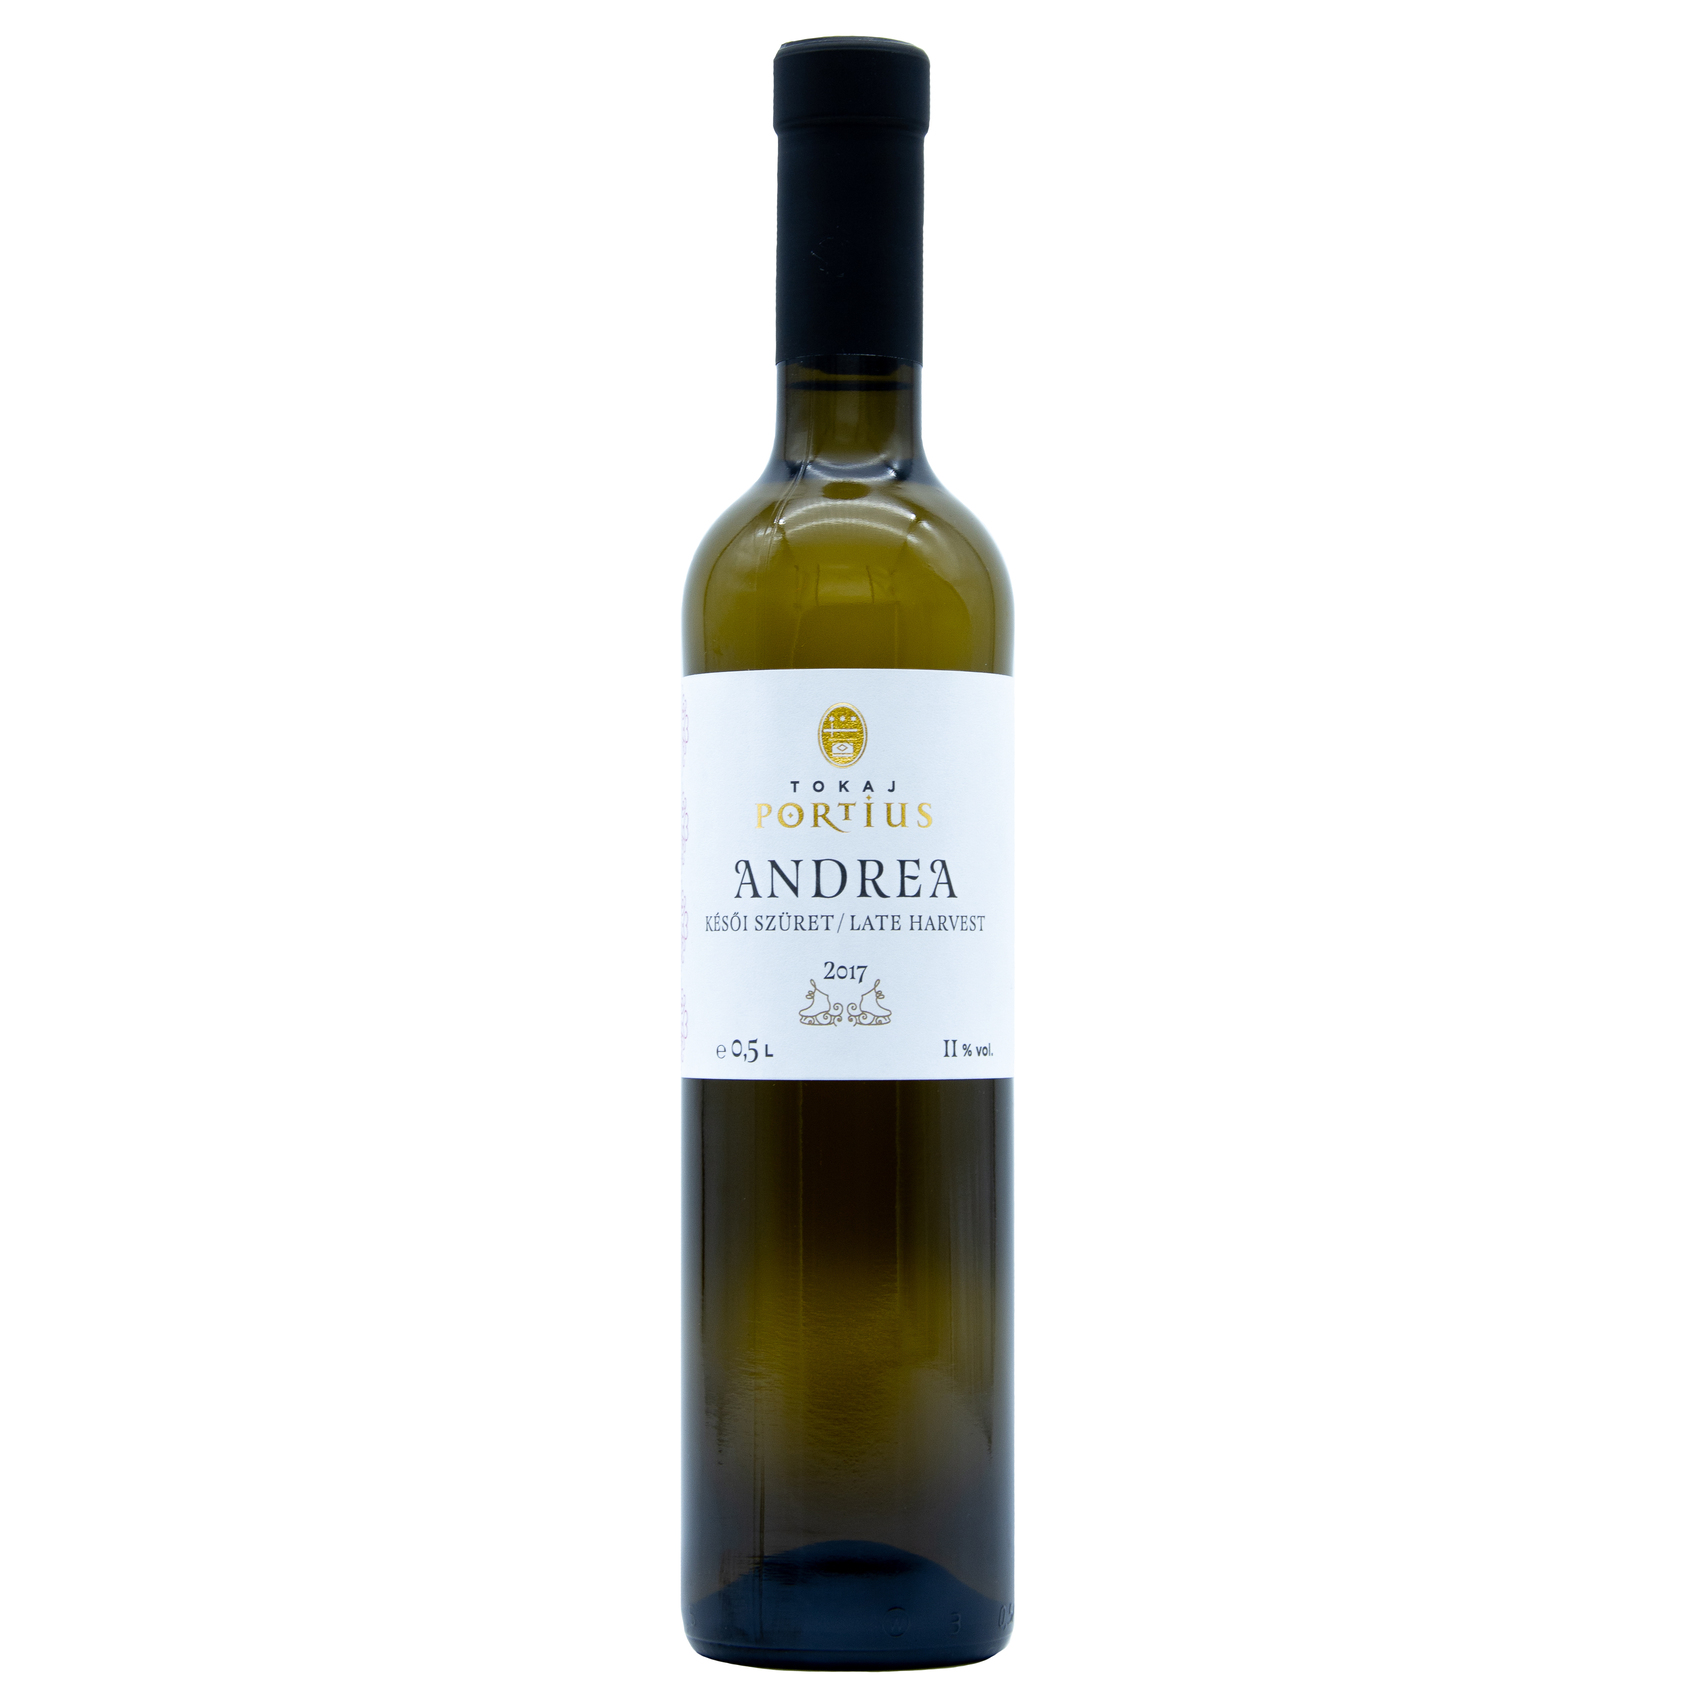 Wino Tokaji Portius Andrea 0,5l